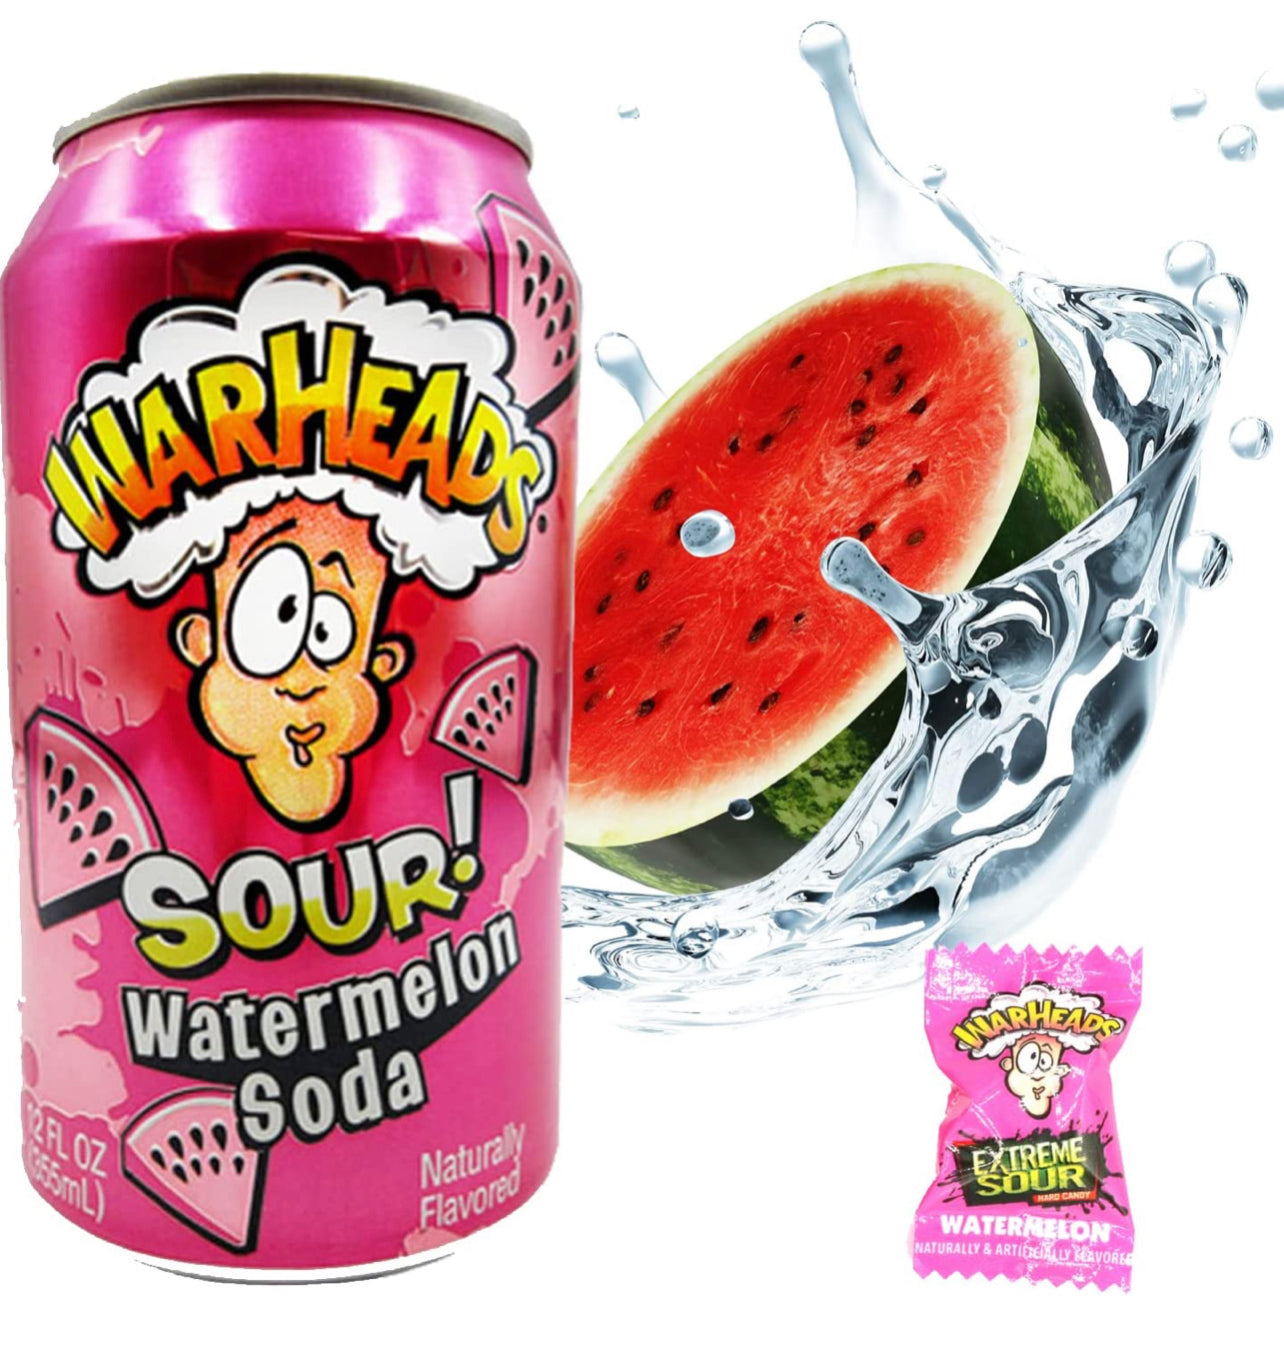 Warheads Soda - Watermelon